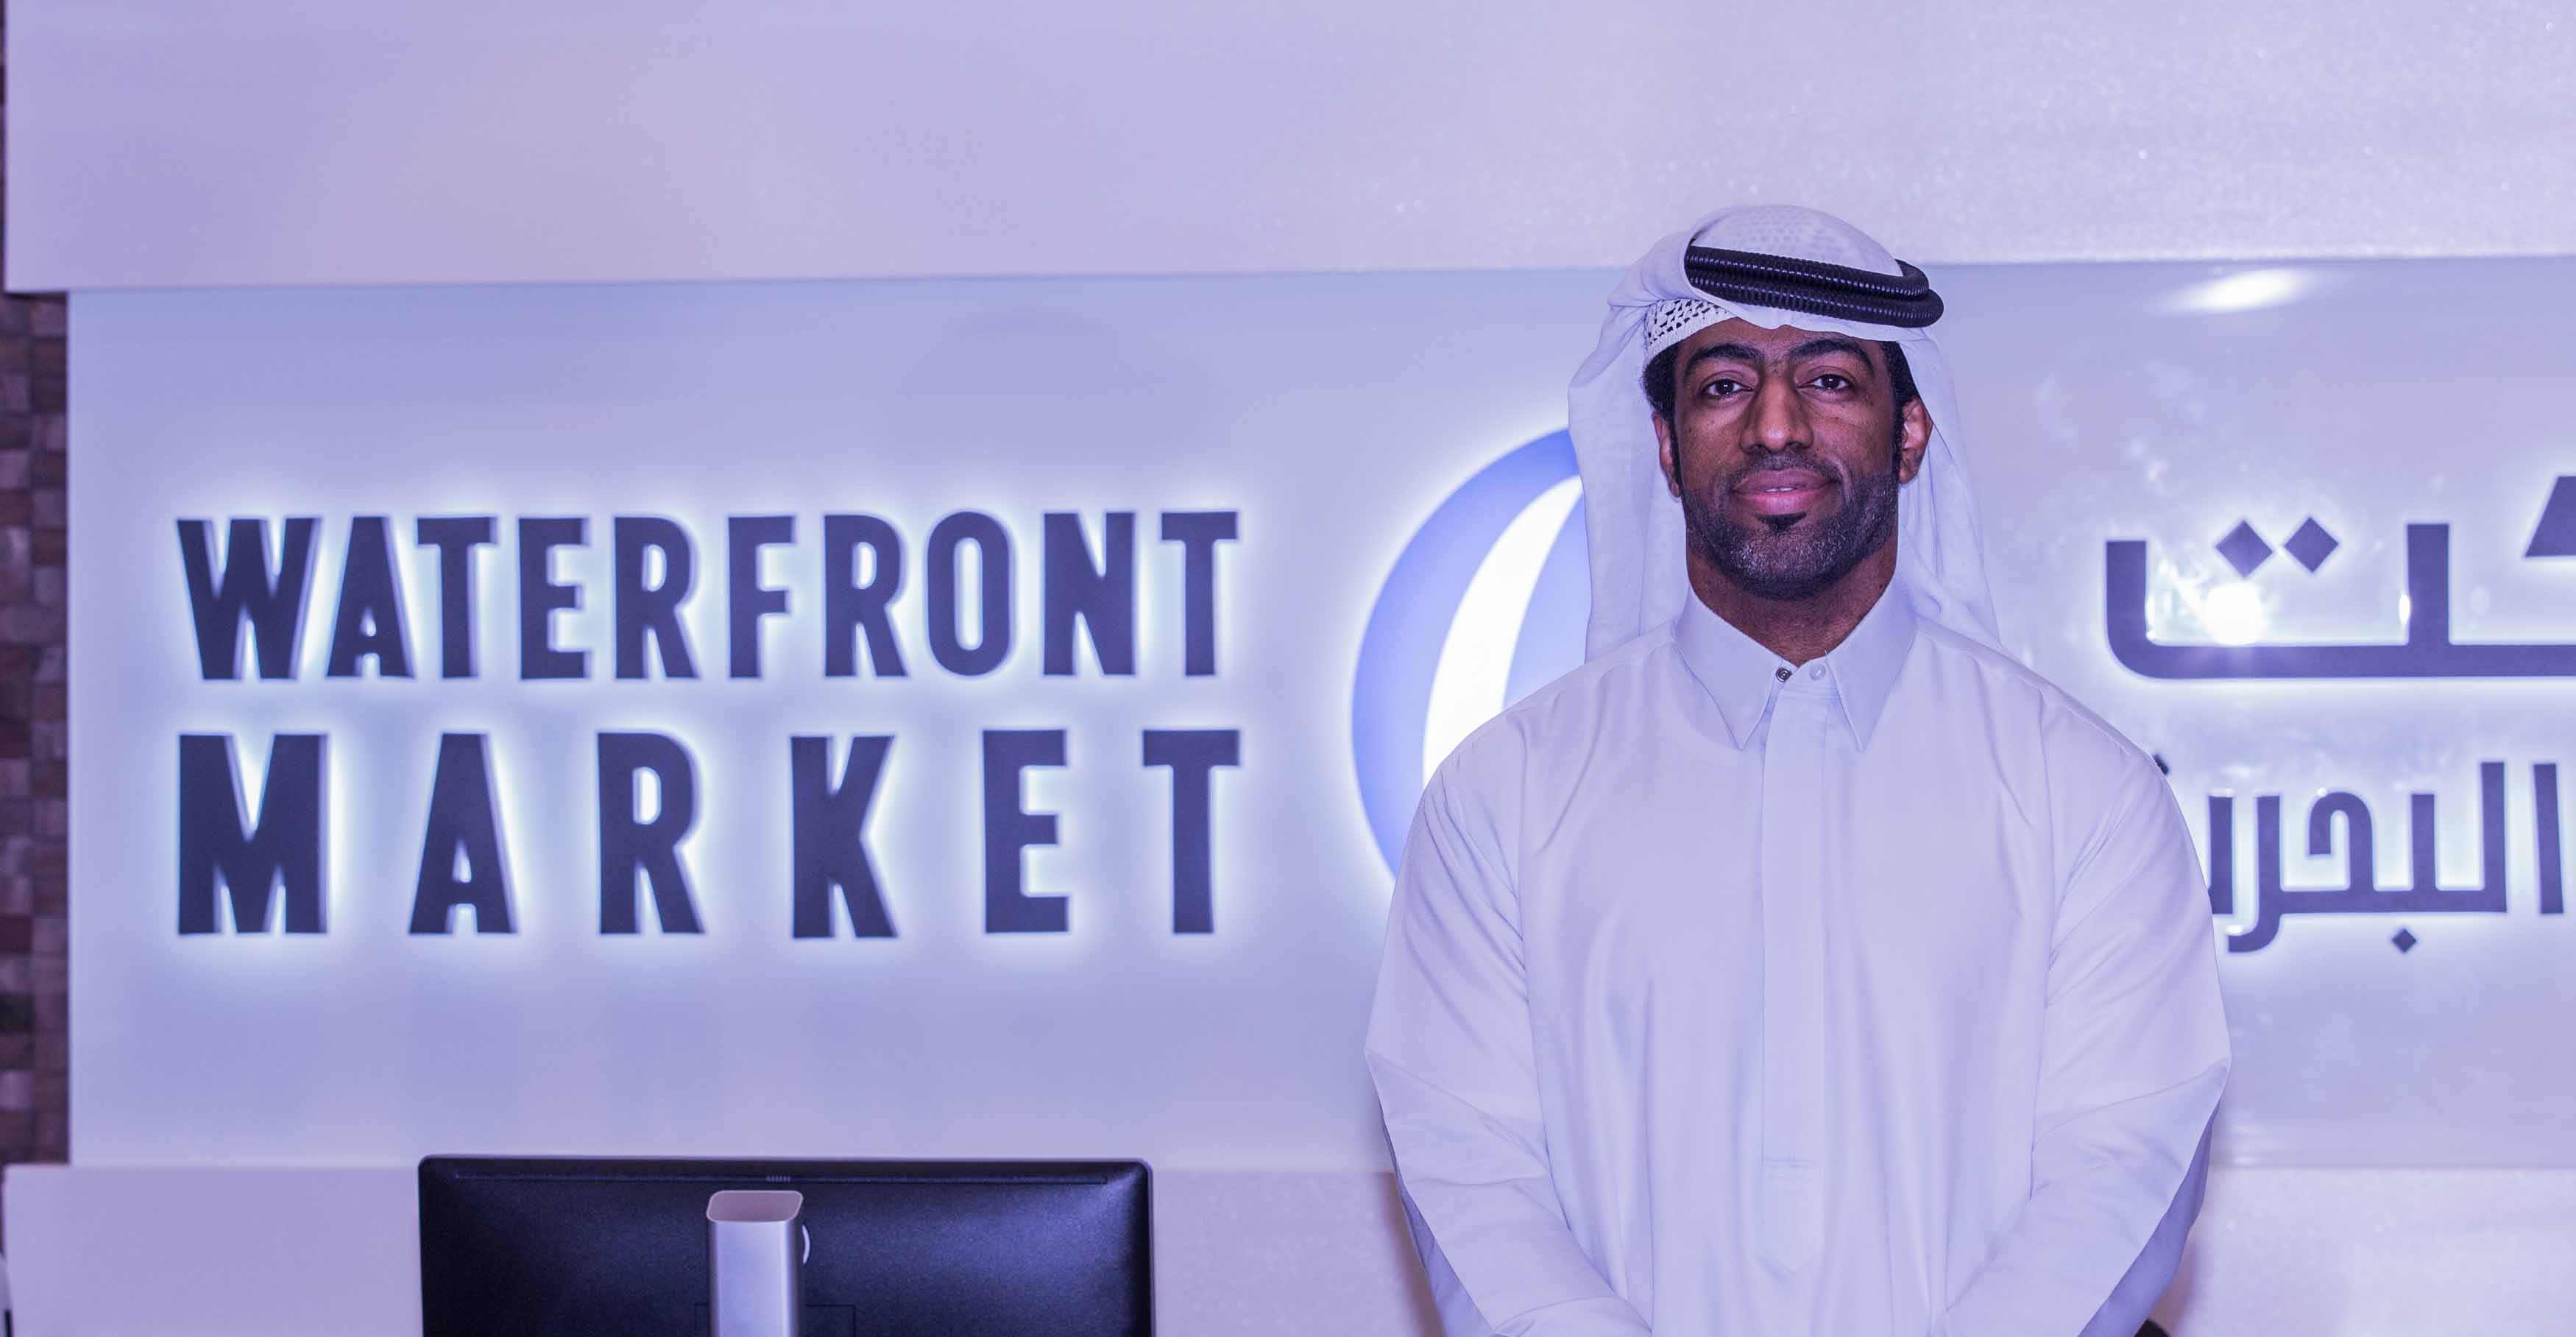 ماركت الواجهة البحرية وجهة تسوق جديدة في دبي